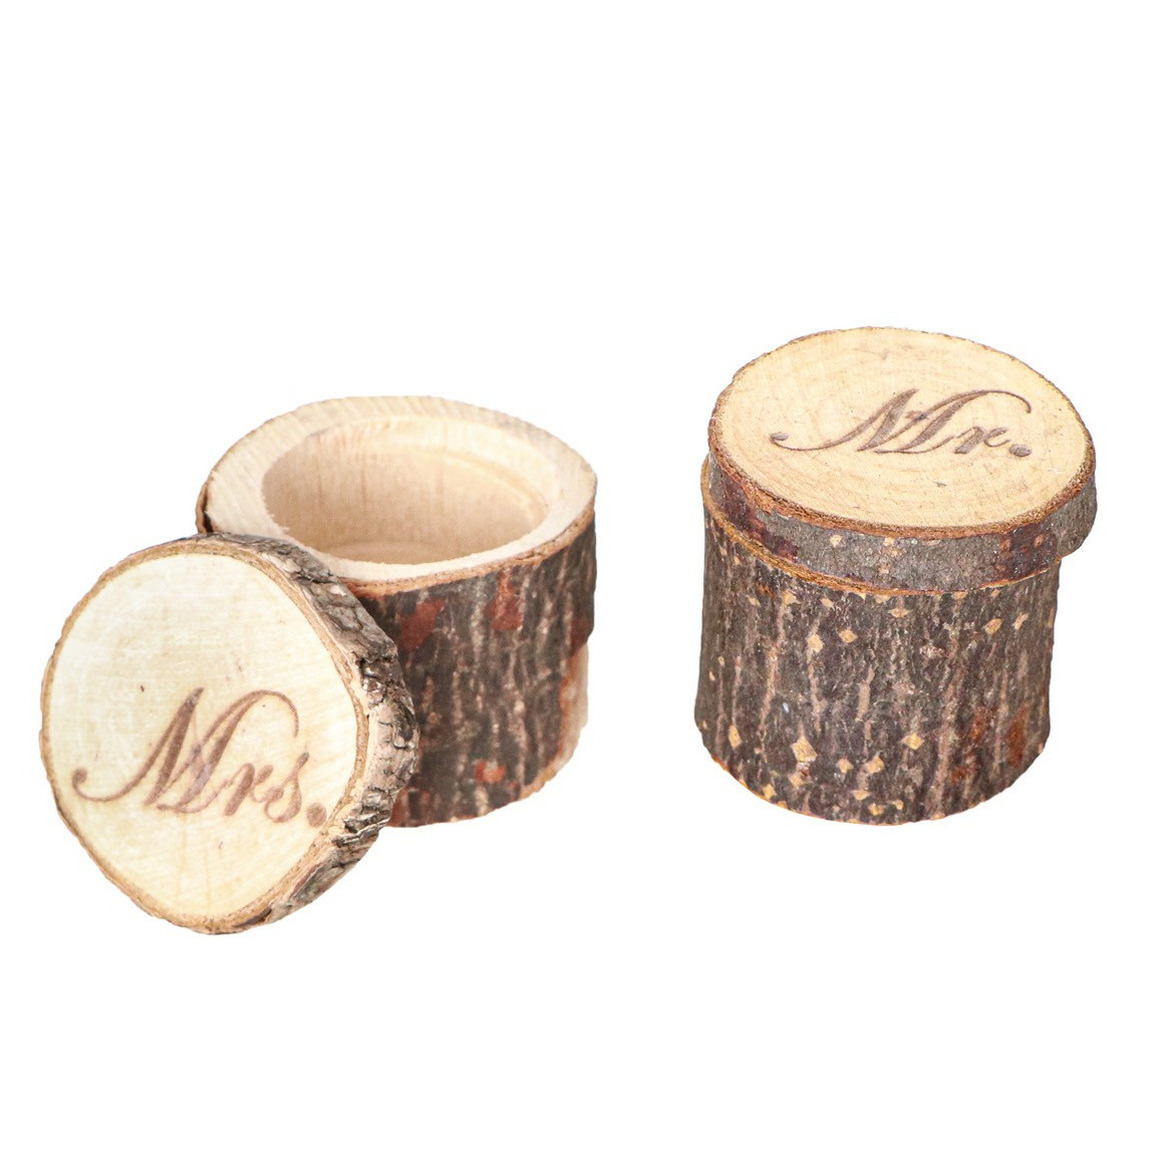 Chaks Bruiloft-huwelijk trouwringen boomstammetje hout MR & MRS ringdoosje D6 x H4 cm